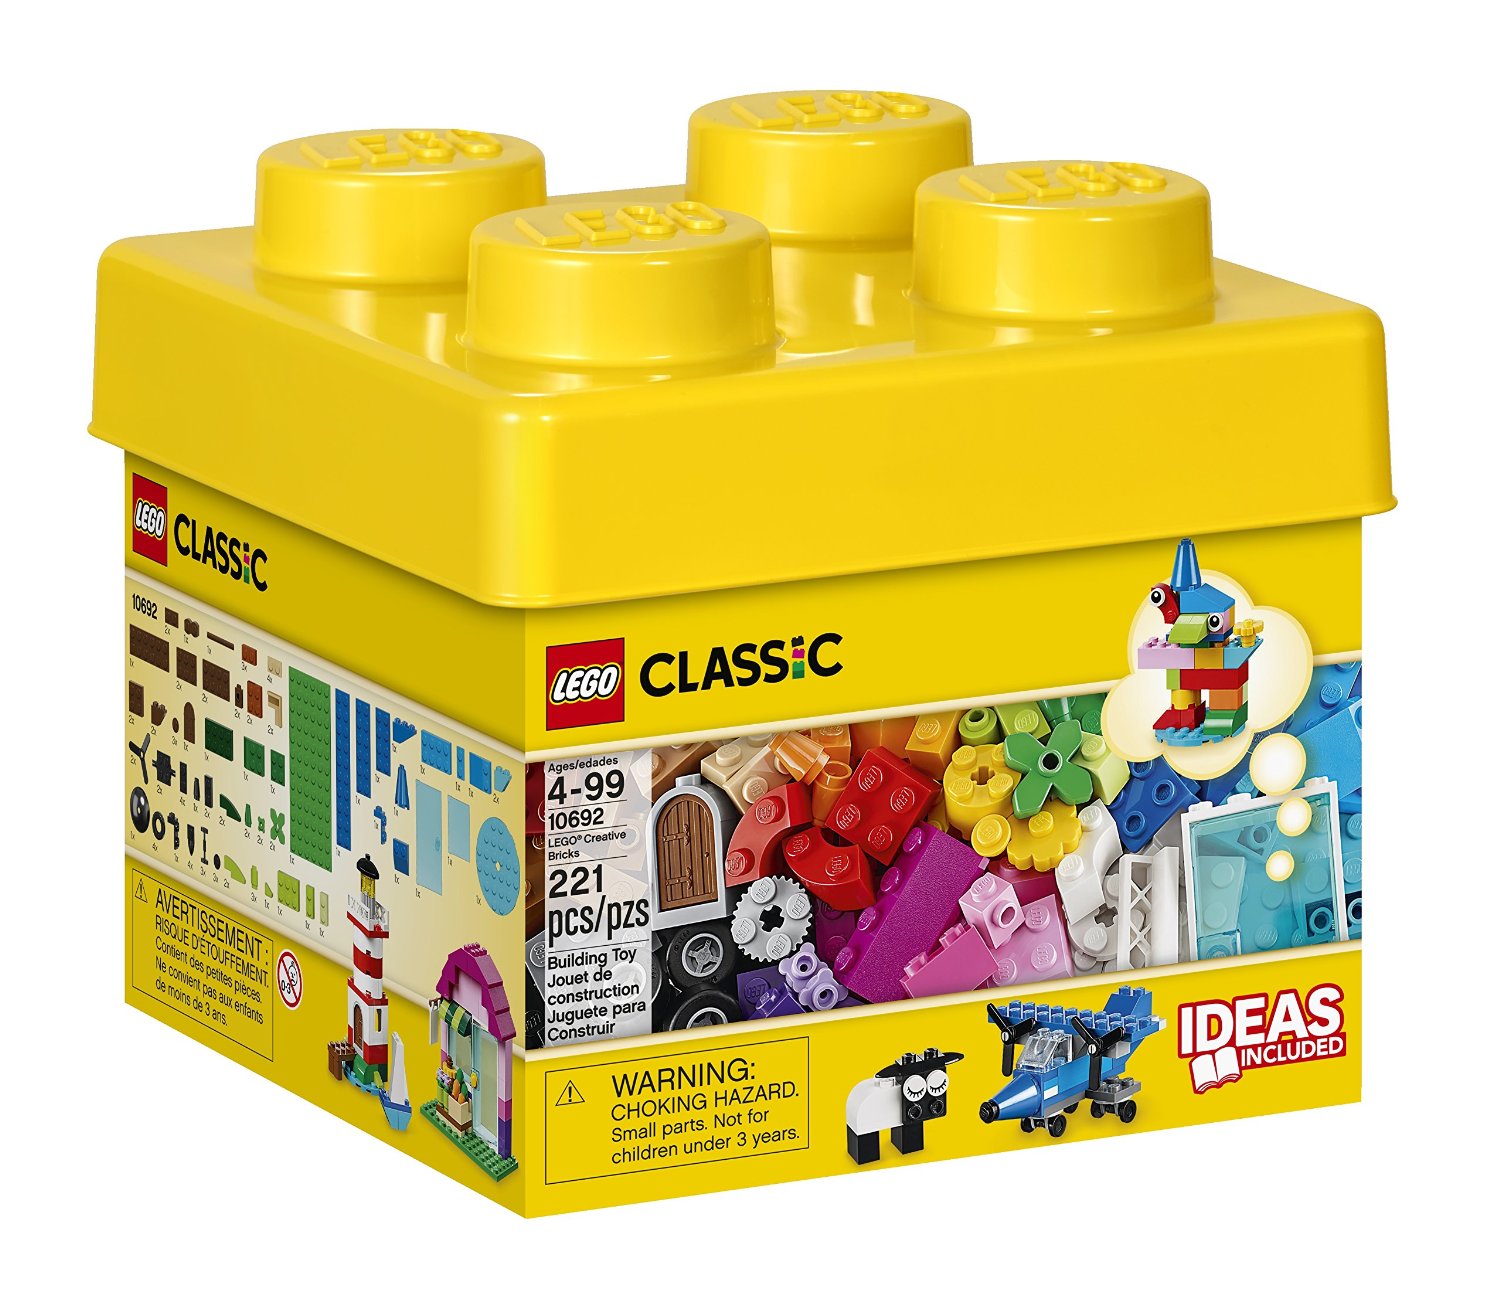 LEGO Easter Egg Hunt Ideas